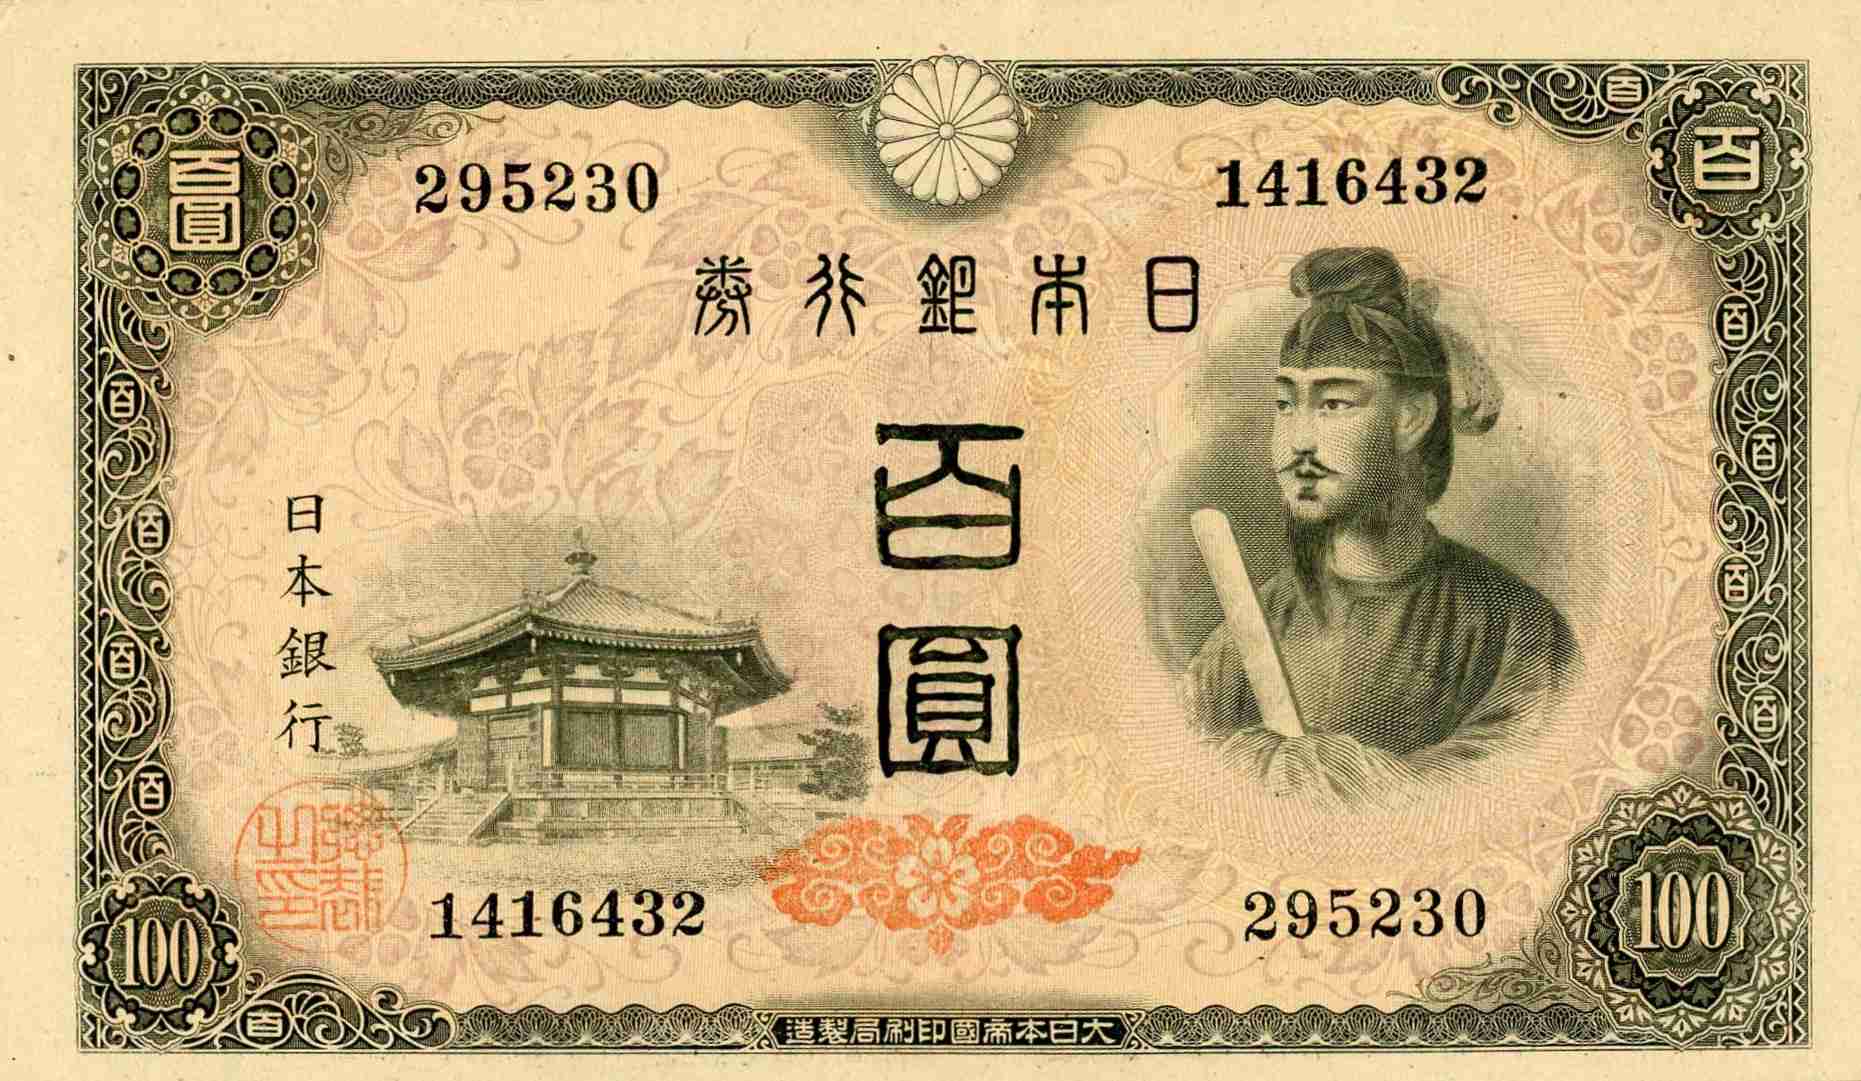 Japan 100 yen 1946 -1956 face.jpg